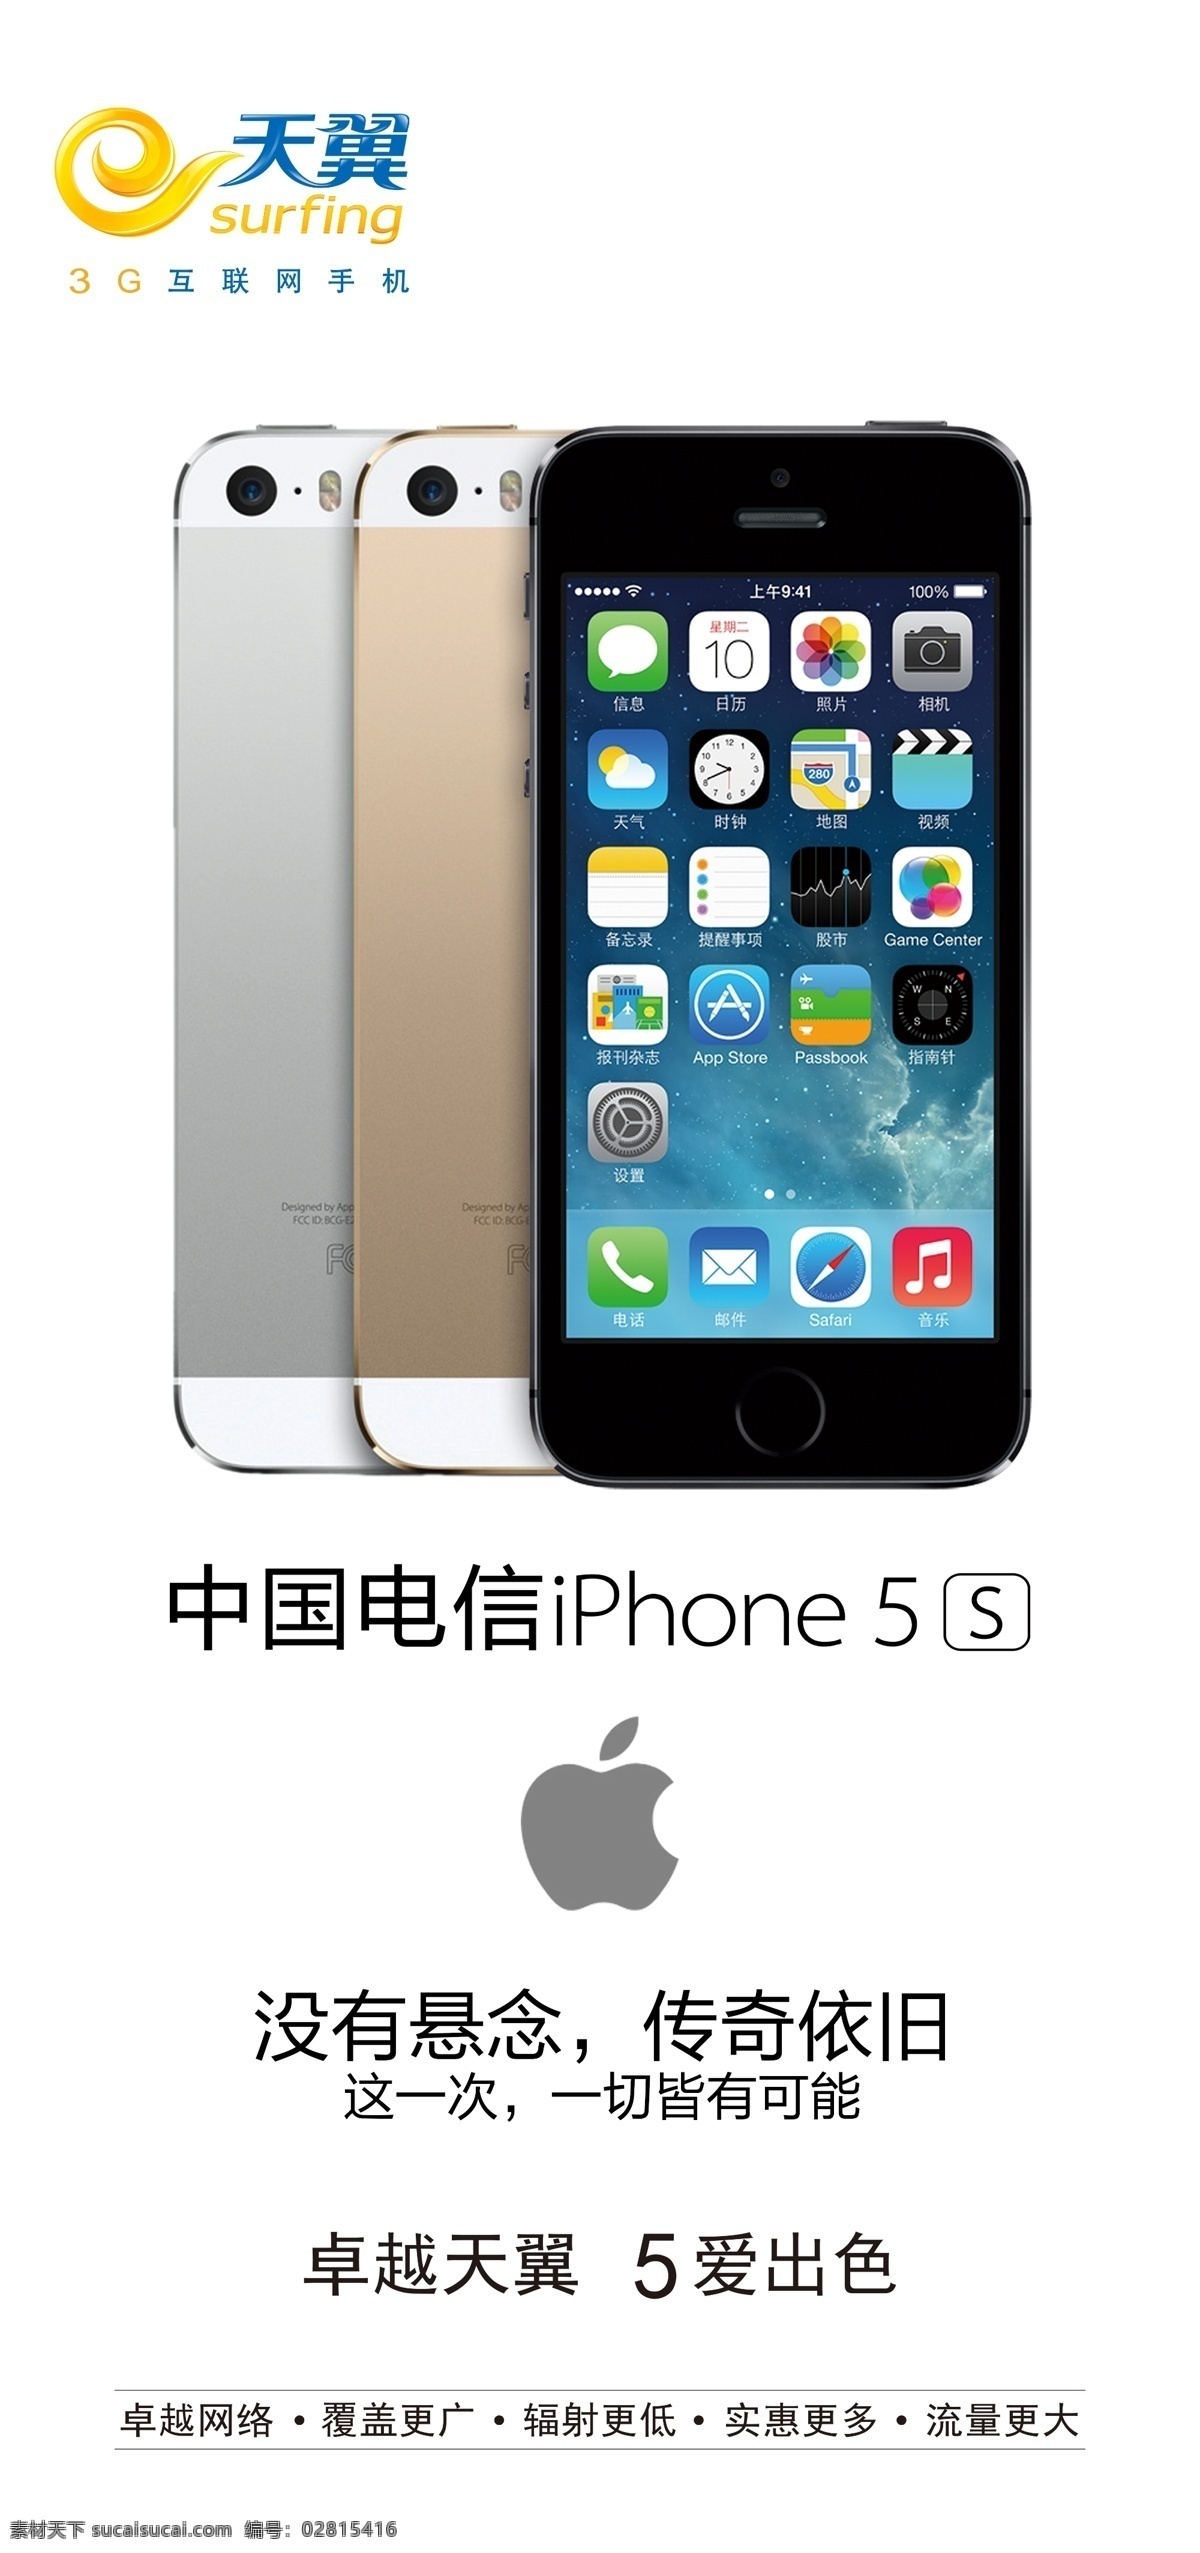 苹果5s海报 苹果5s iphone5s iphone 海报 天翼标志 苹果标志 黑色